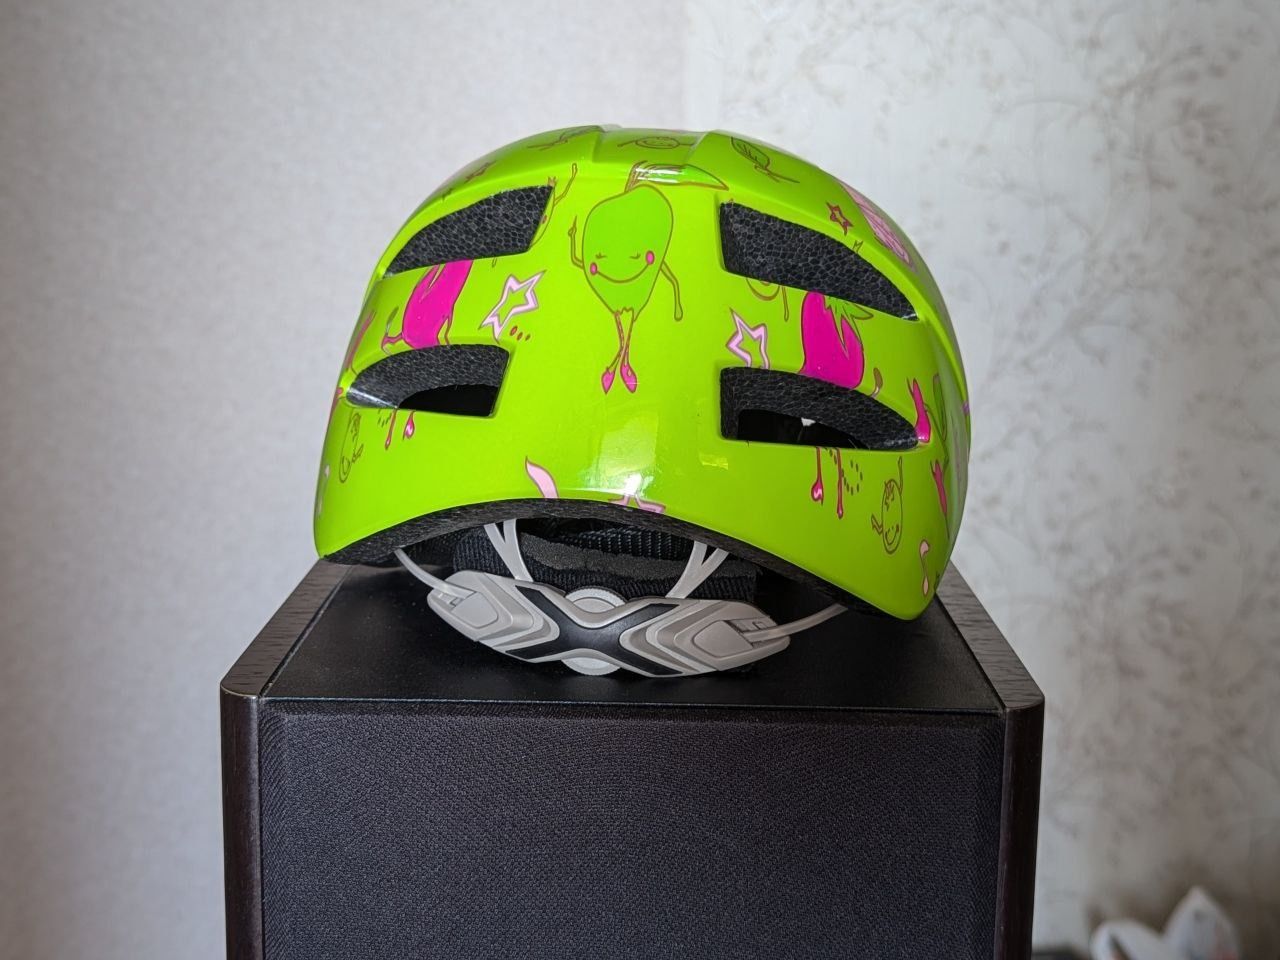 Детский шлем Swift размер S (48-52 см) сост. новое